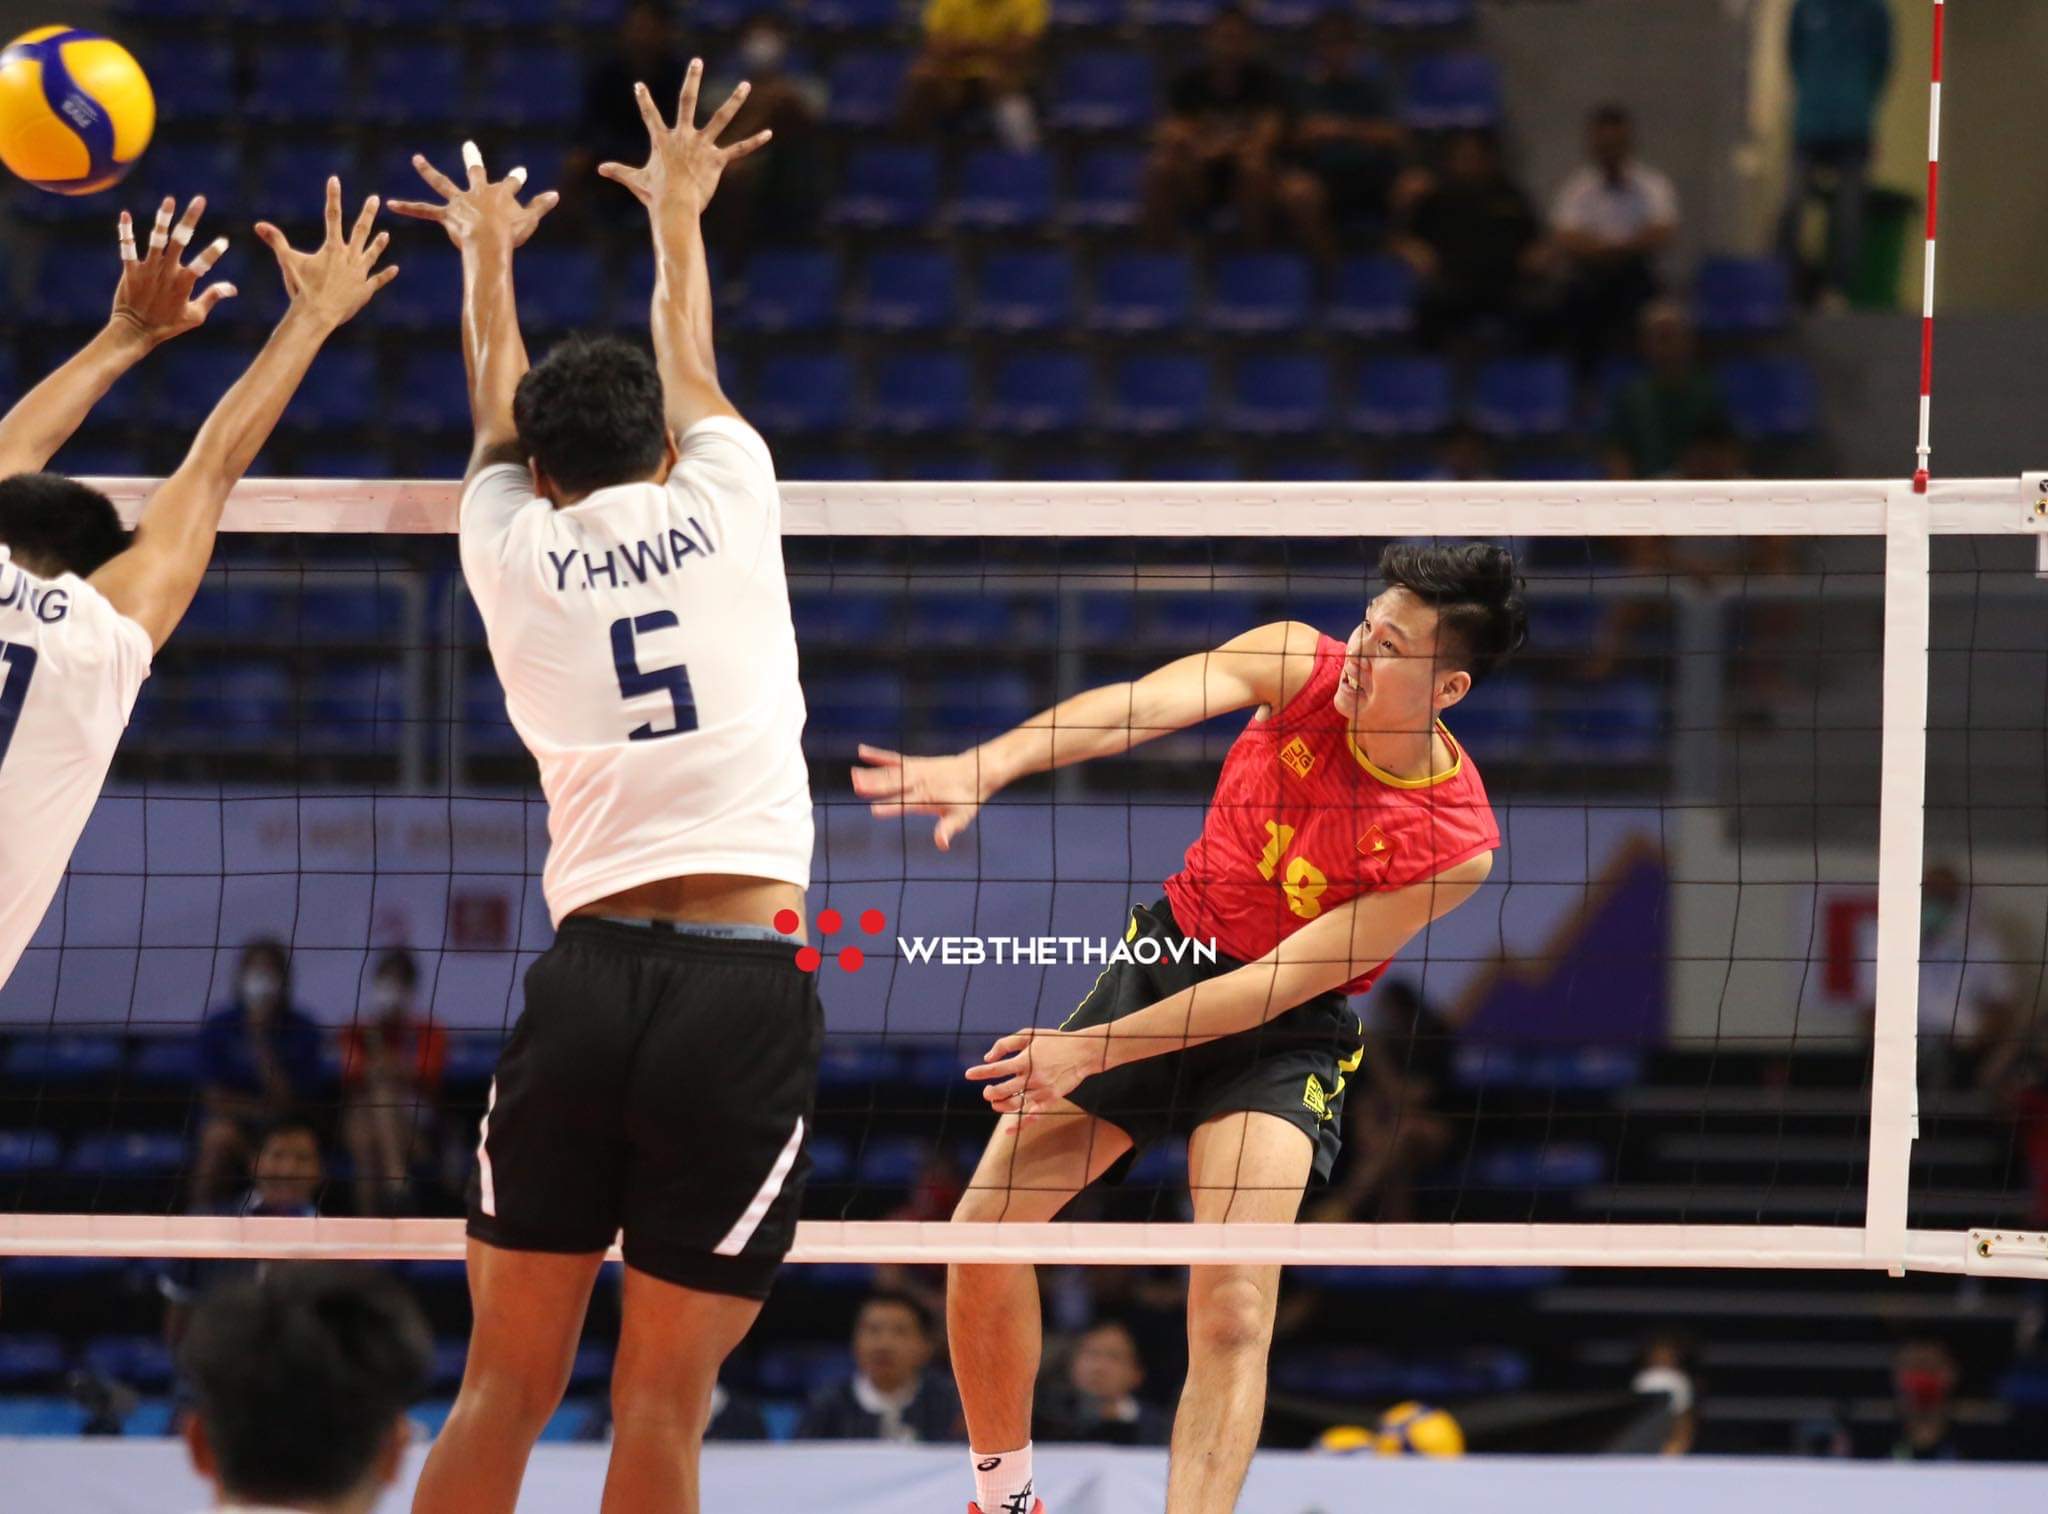 Bán kết bóng chuyền nam SEA Games 31: Thử thách cho chủ nhà Việt Nam